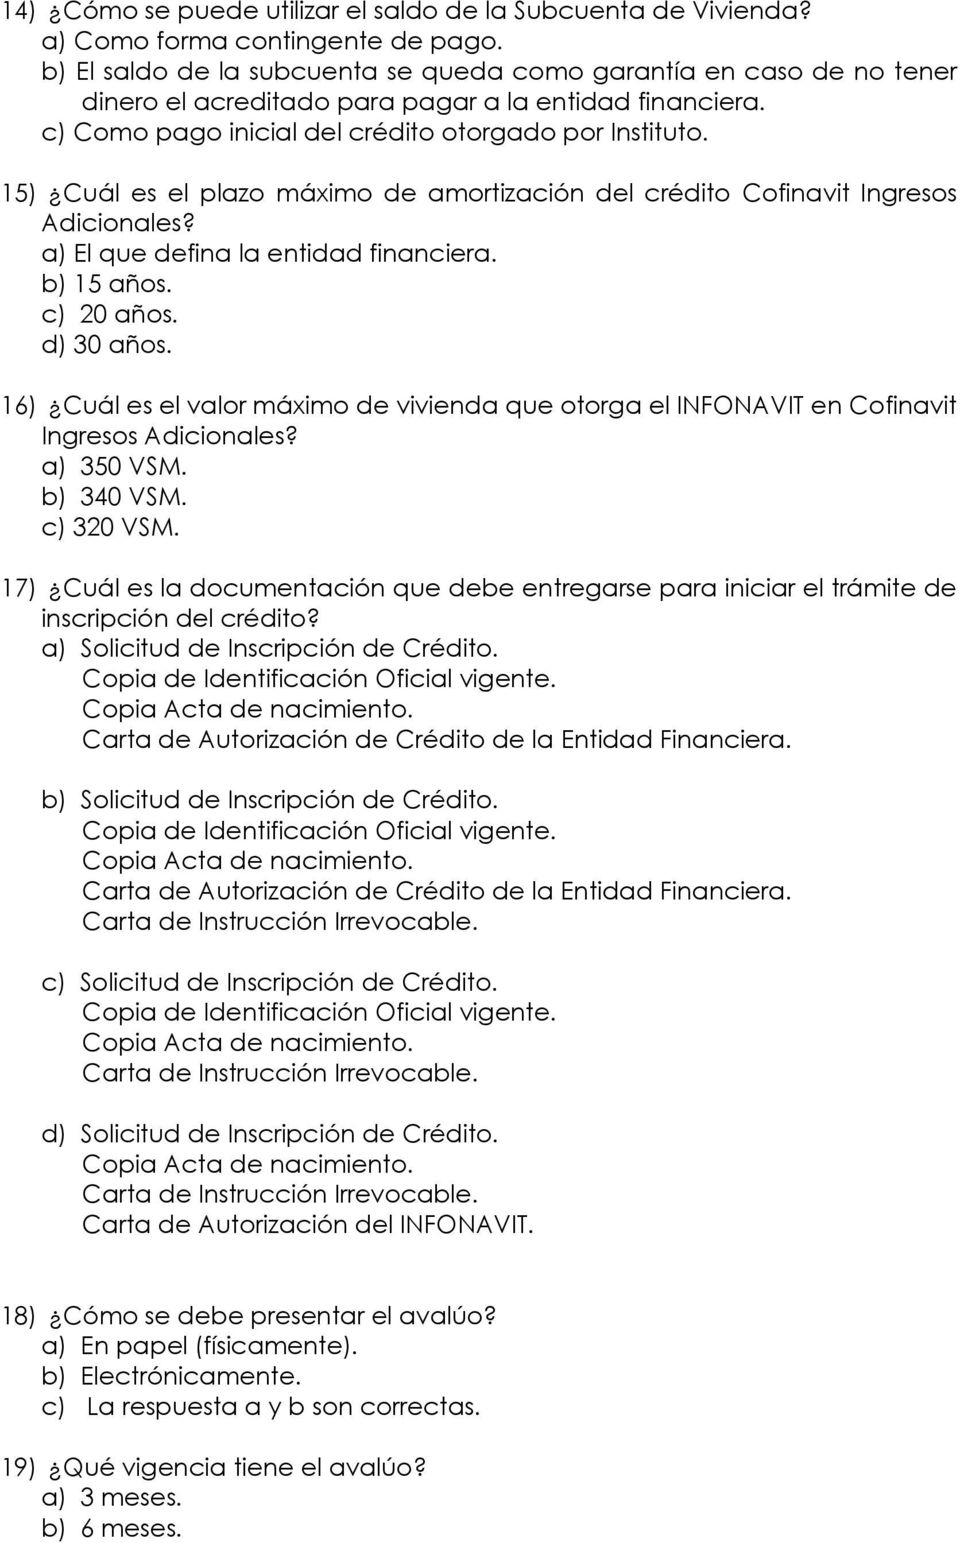 15) Cuál es el plazo máximo de amortización del crédito Cofinavit Ingresos a) El que defina la entidad financiera. b) 15 años. c) 20 años. d) 30 años.